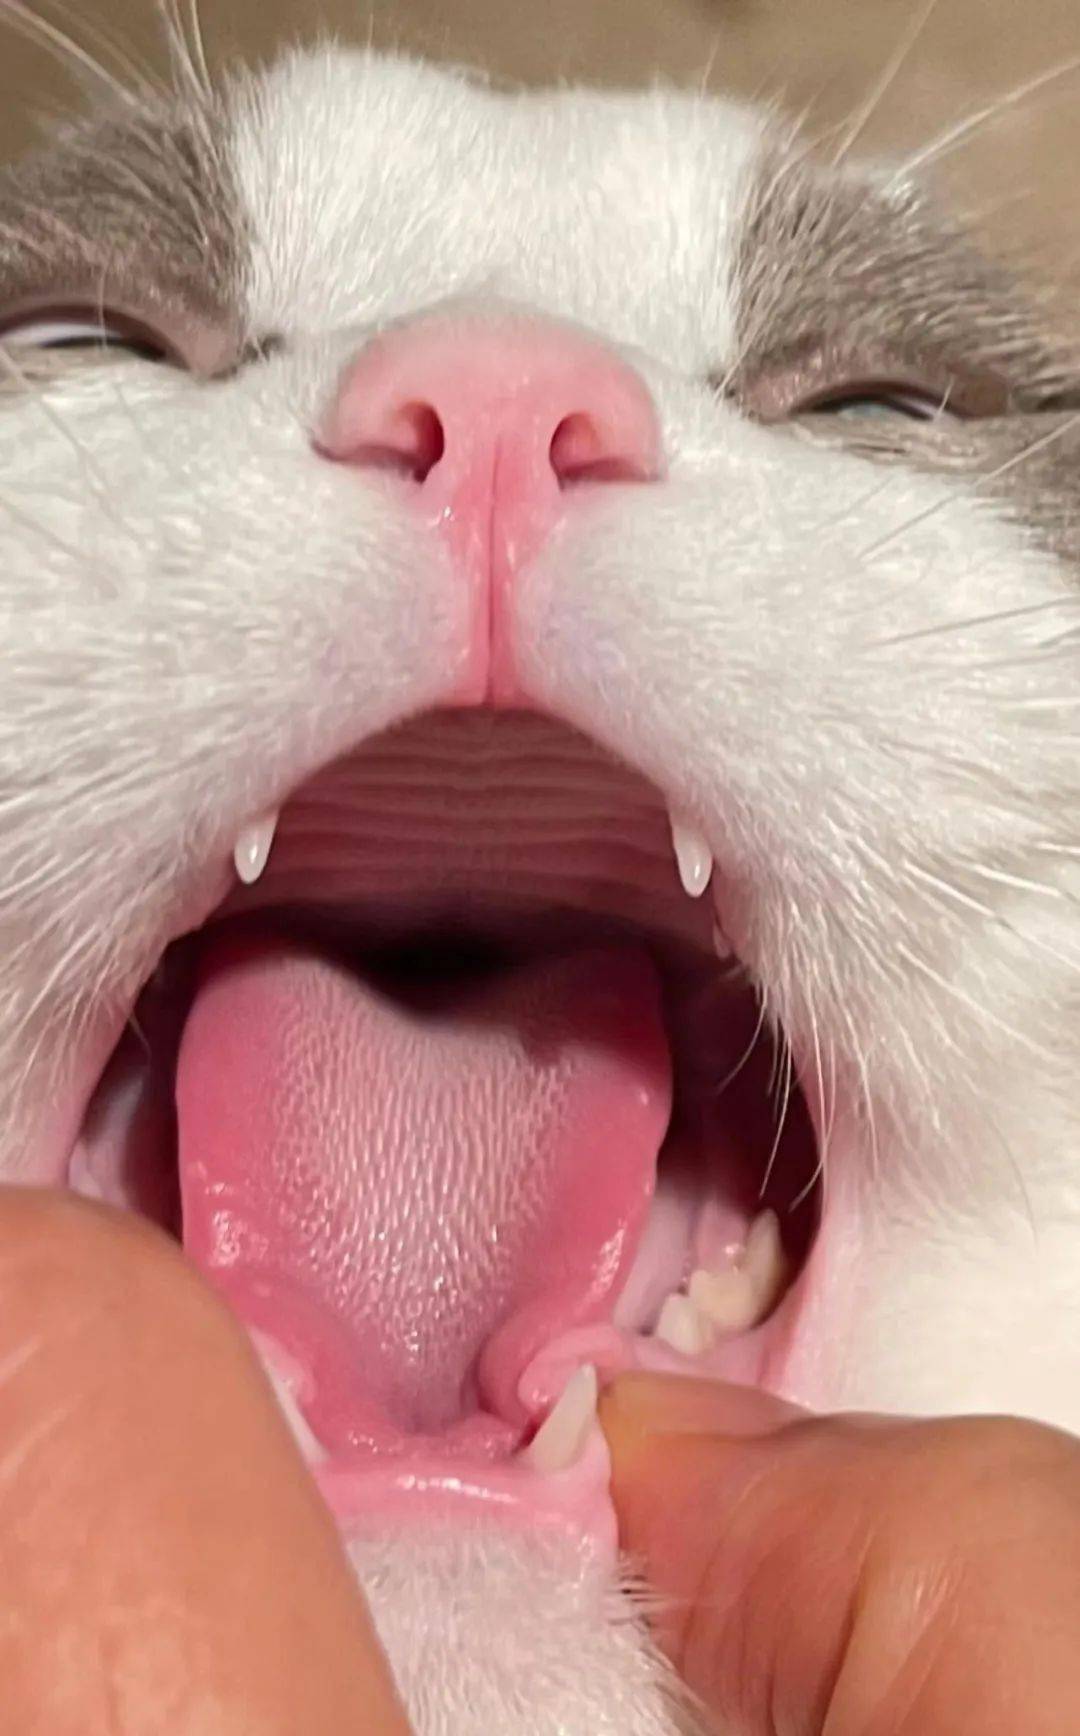 除了口腔疾病问题,猫咪空嚼的常见原因还有以下几点:1.恶心发酸2.